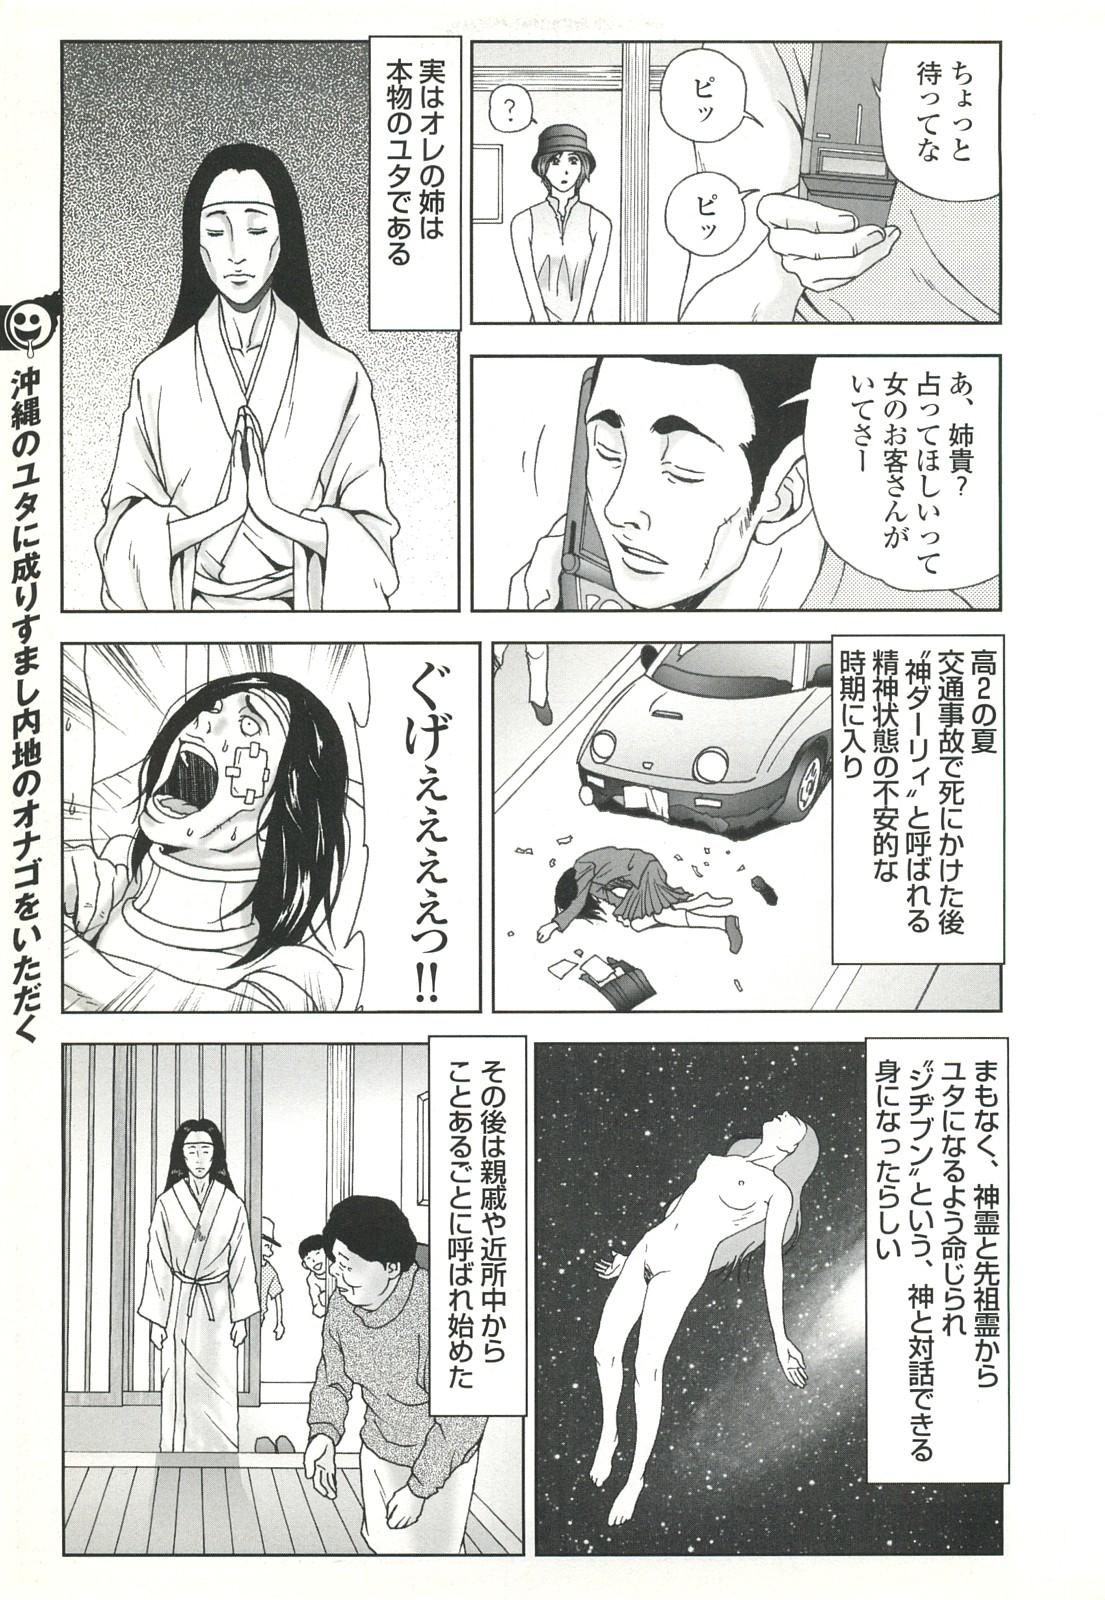 コミック裏モノJAPAN Vol.18 今井のりたつスペシャル号 46